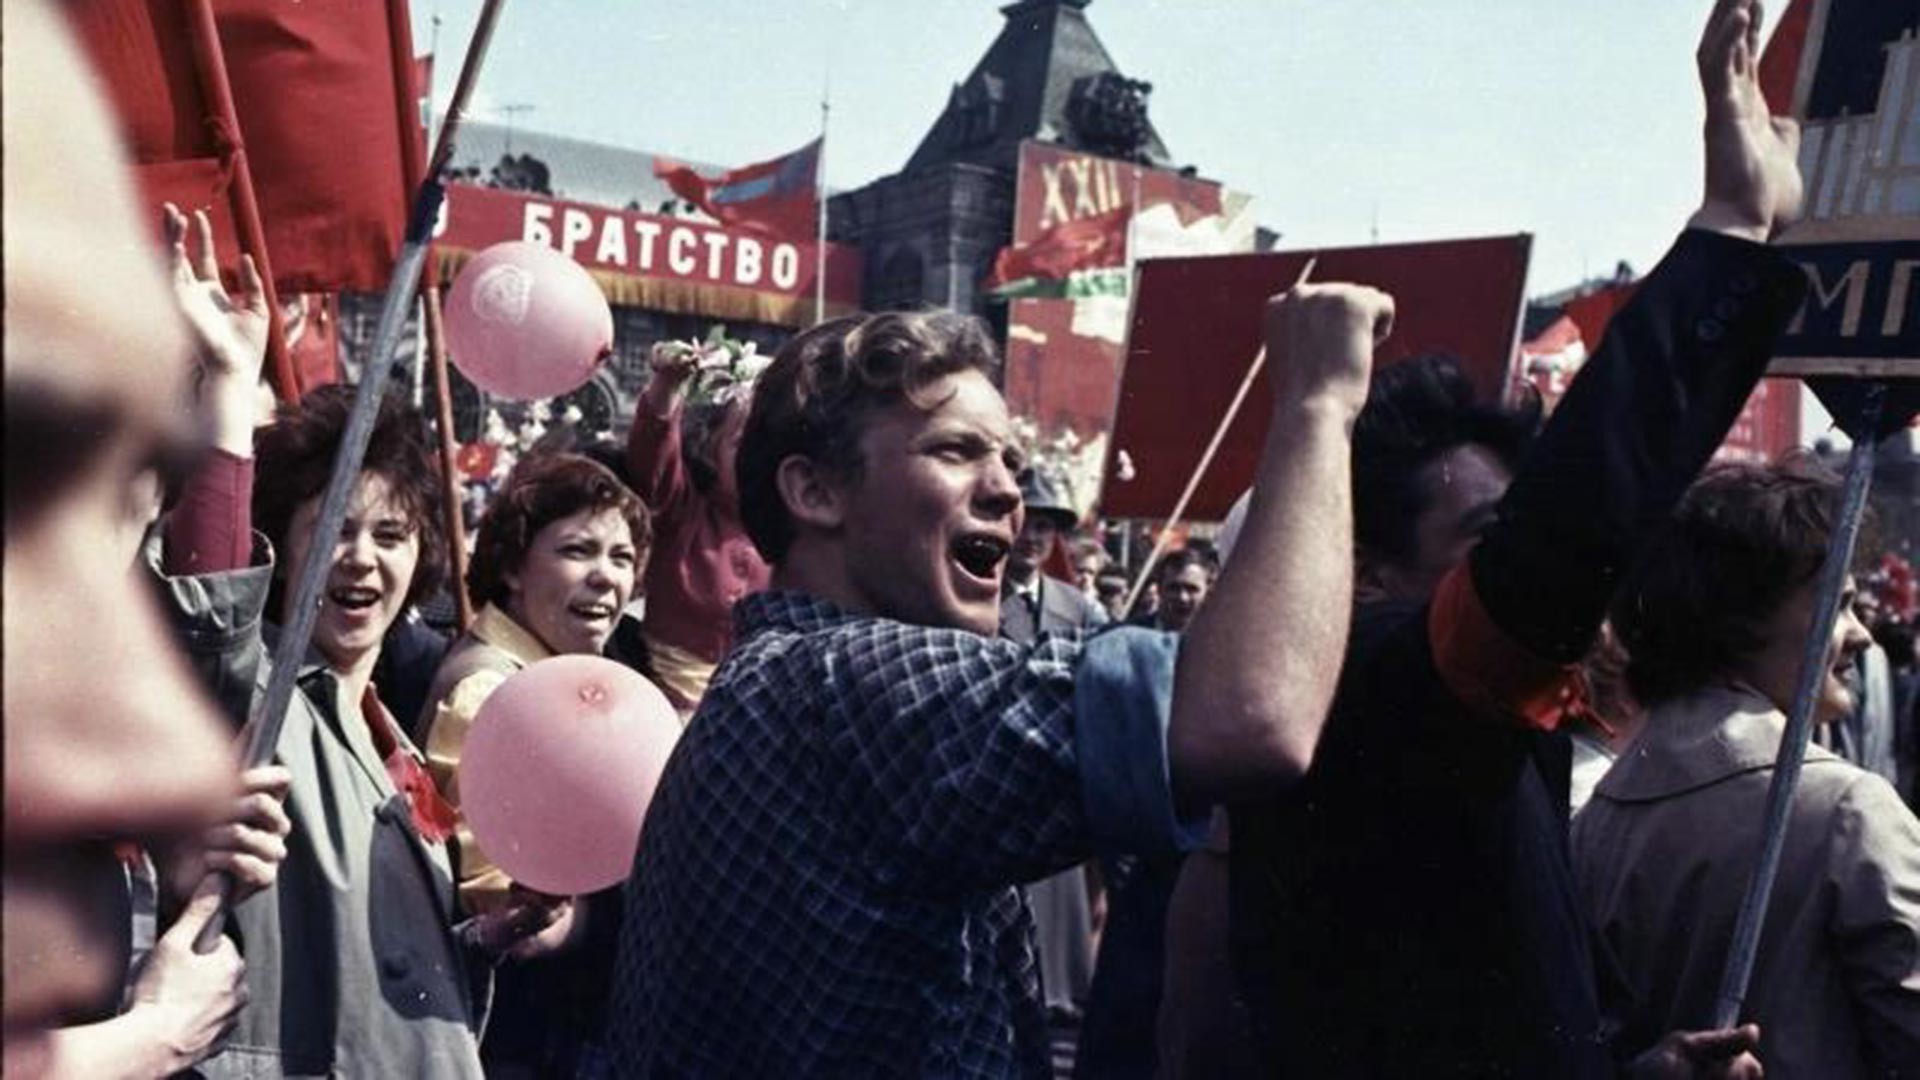 Bei einer Demonstration am 1. Mai: Der Slogan im Hintergrund lautet „Bruderschaft“, 1950er Jahre.